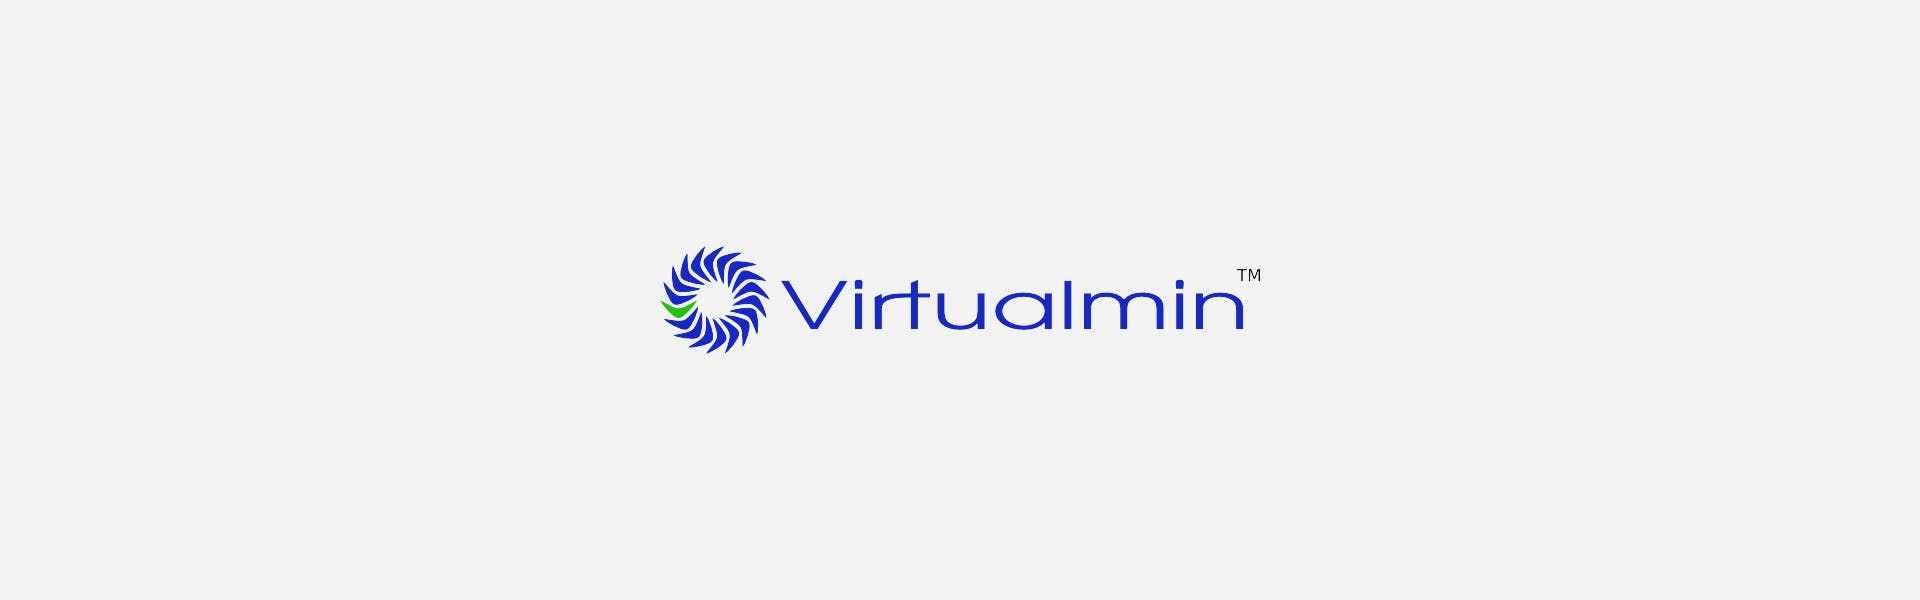 Cómo instalar y configurar Virtualmin en un servidor Linux: guía paso a paso